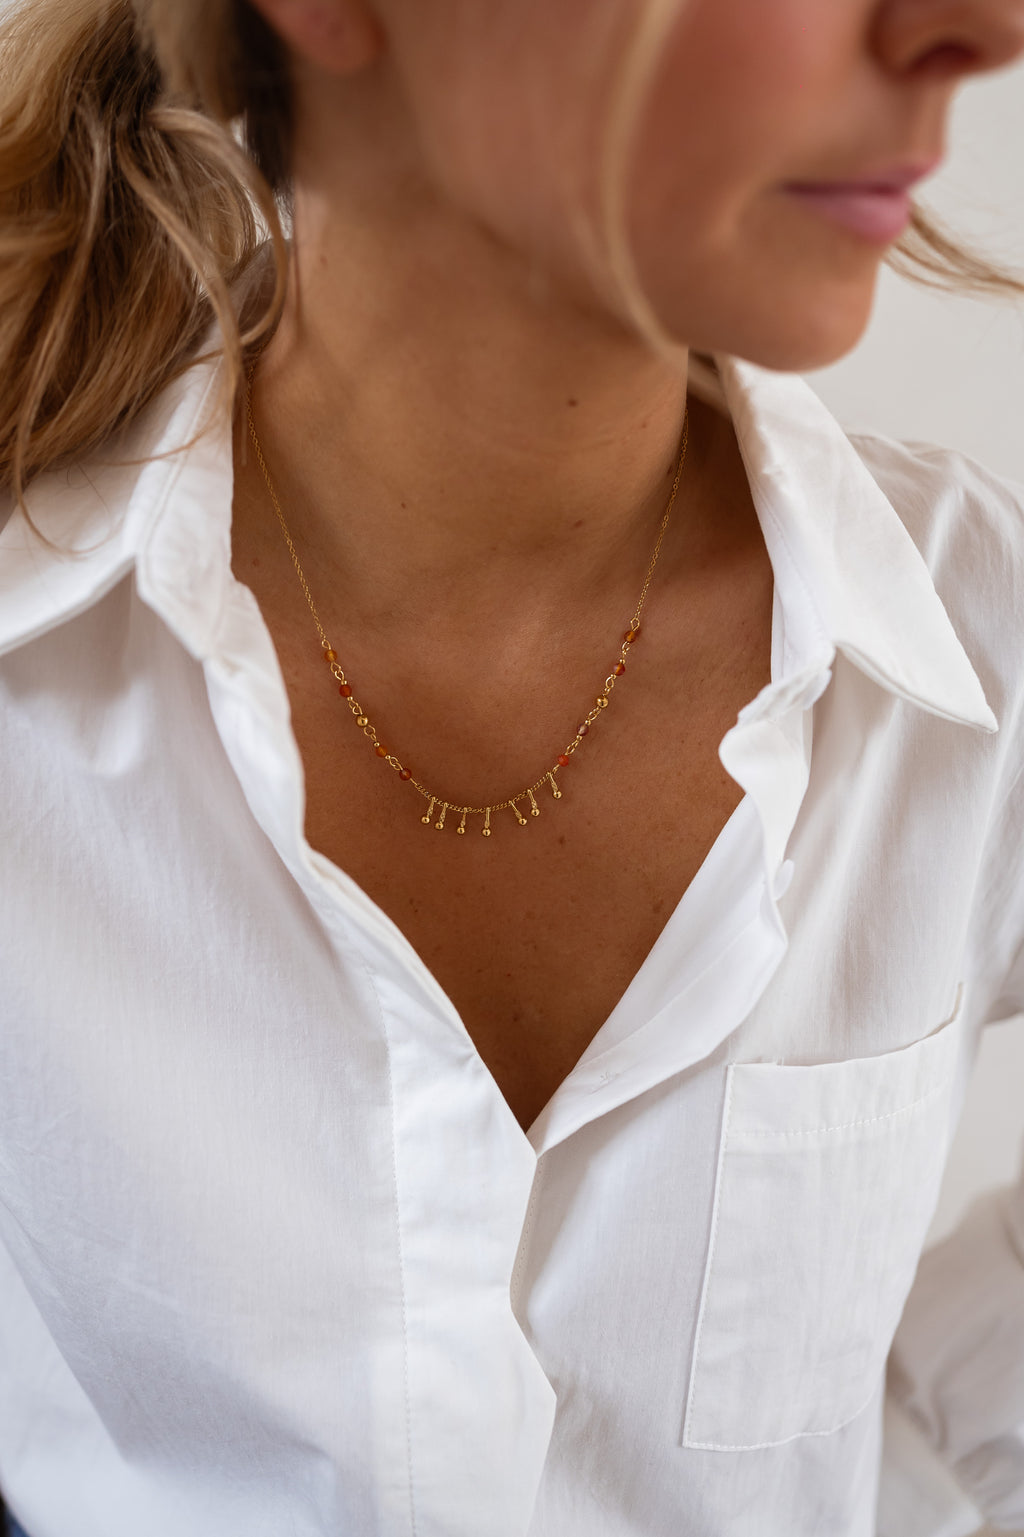 Leewan necklace - golden and orange